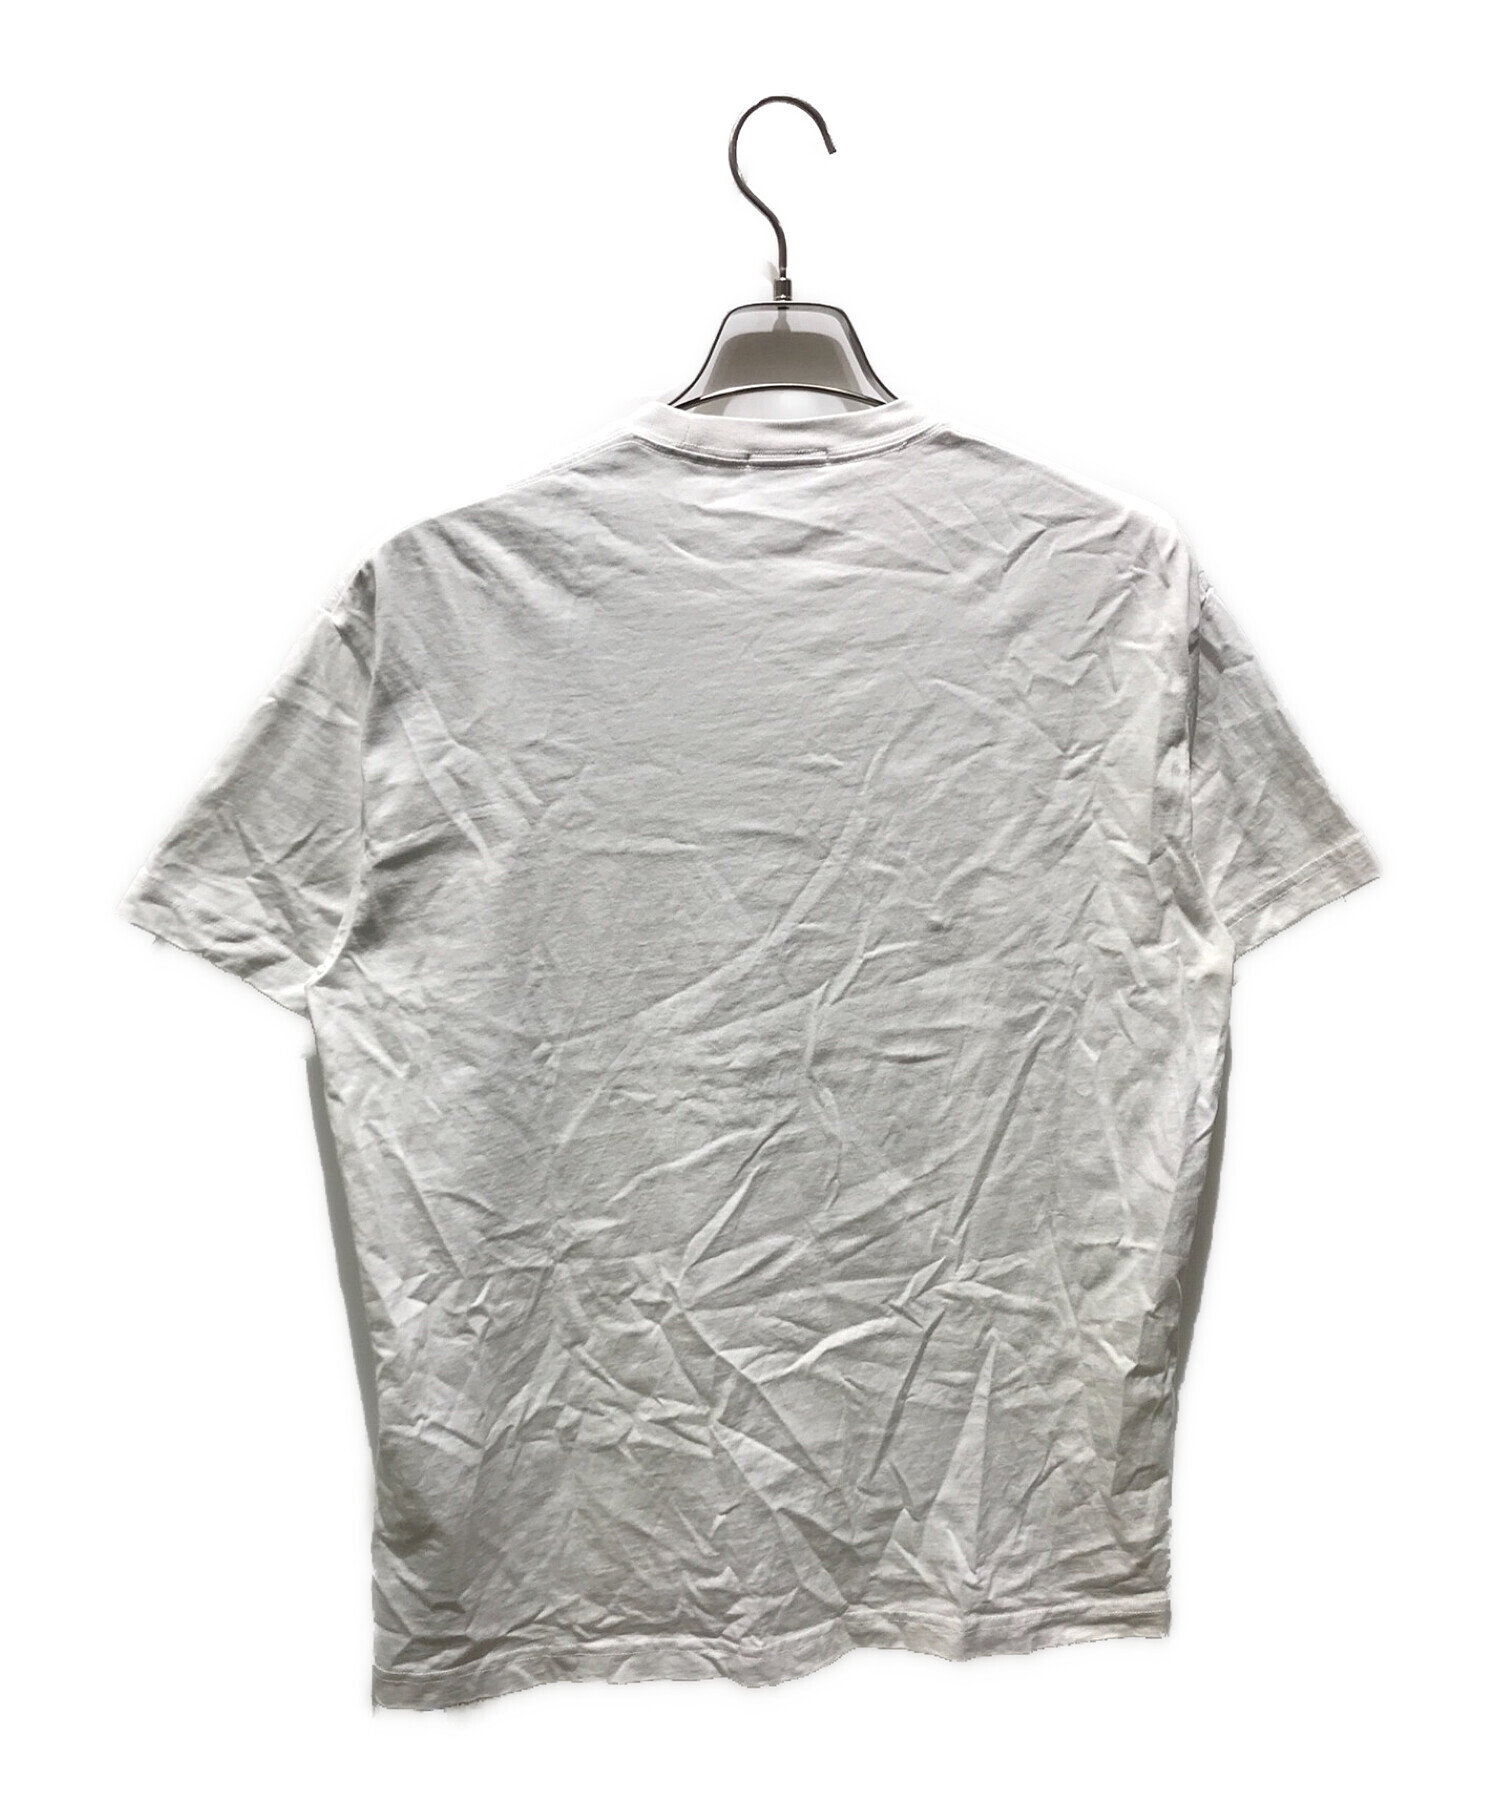 KITH (キス) ロゴプリントTシャツ ホワイト サイズ:S